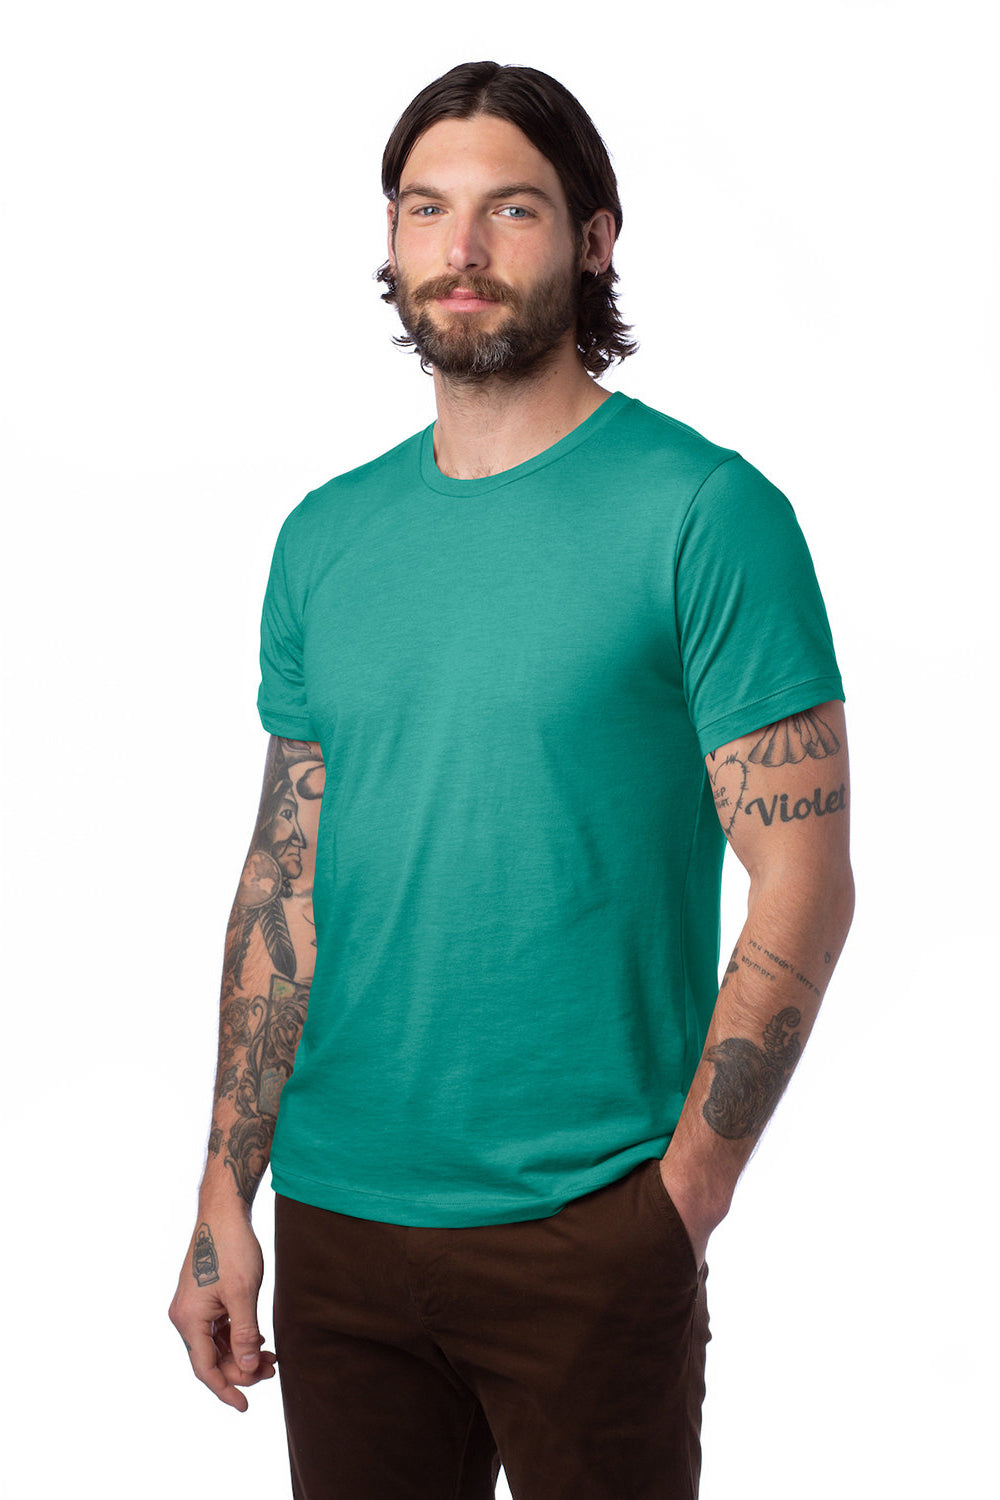 Alternative AA1070/1070 Mens Go To Jersey Short Sleeve Crewneck T-Shirt Aqua Tonic Green Model 3Q